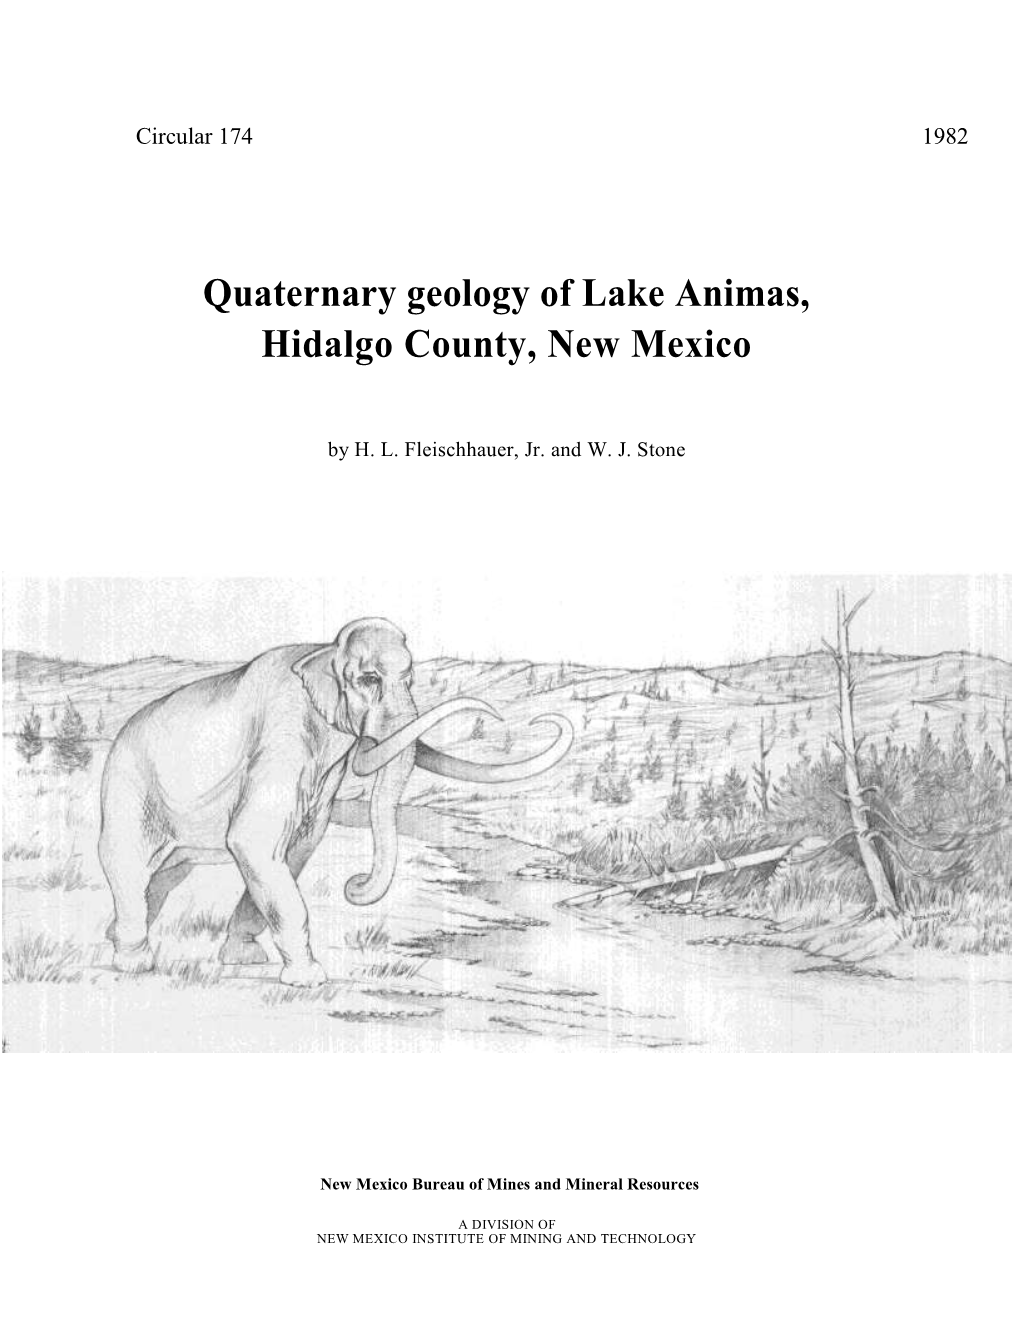 Quaternary Geology of Lake Animas, Hidalgo County, New Mexico